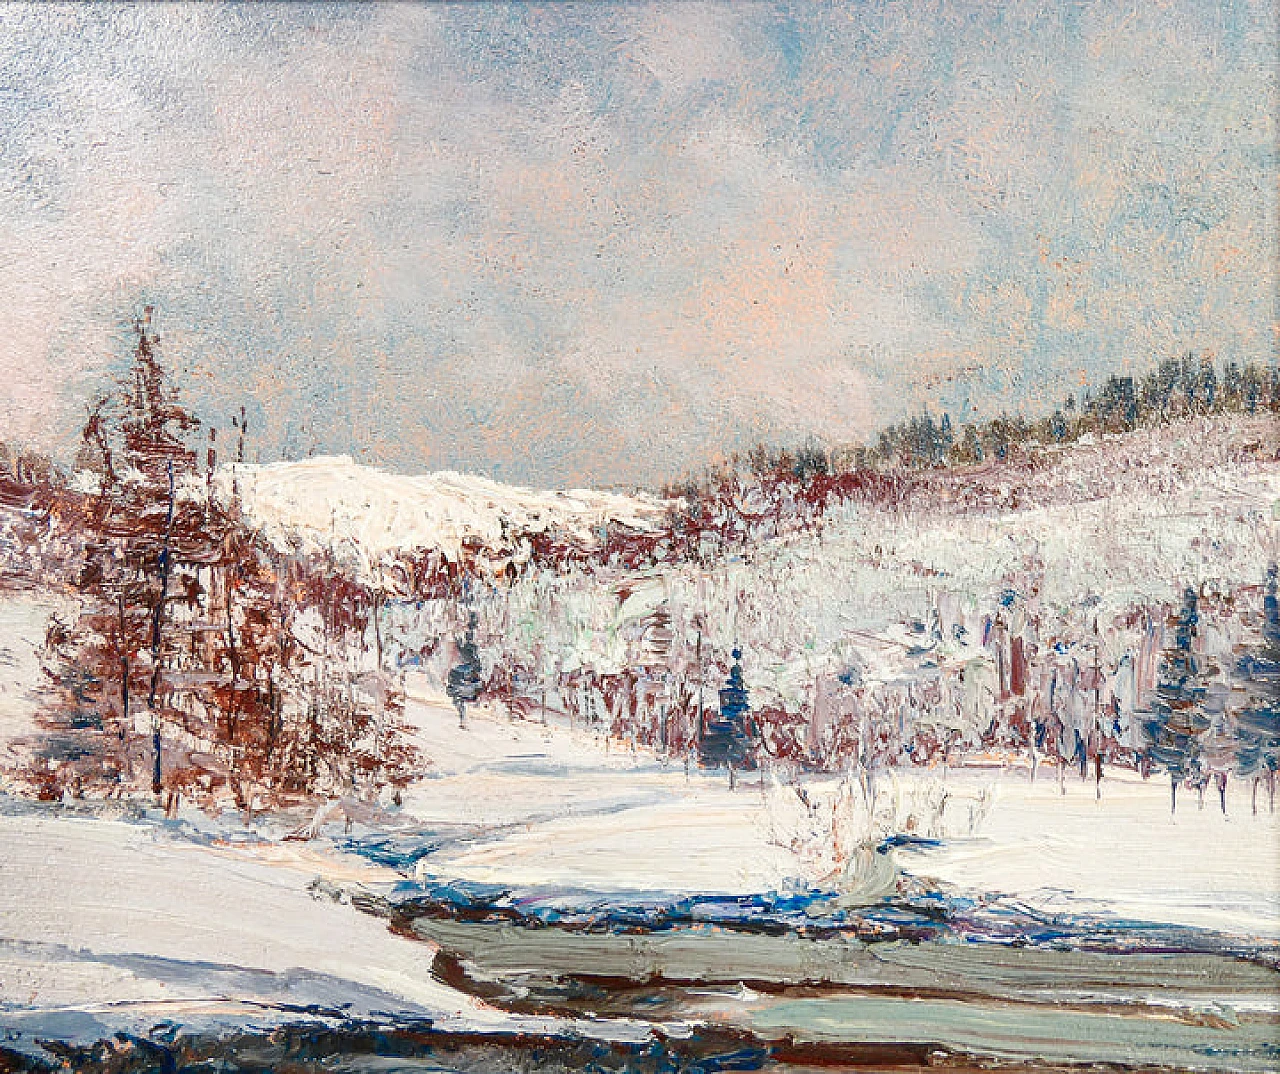 Sergio Manfredi, Alta Val di Susa, dipinto a olio su tavola, 1978 6